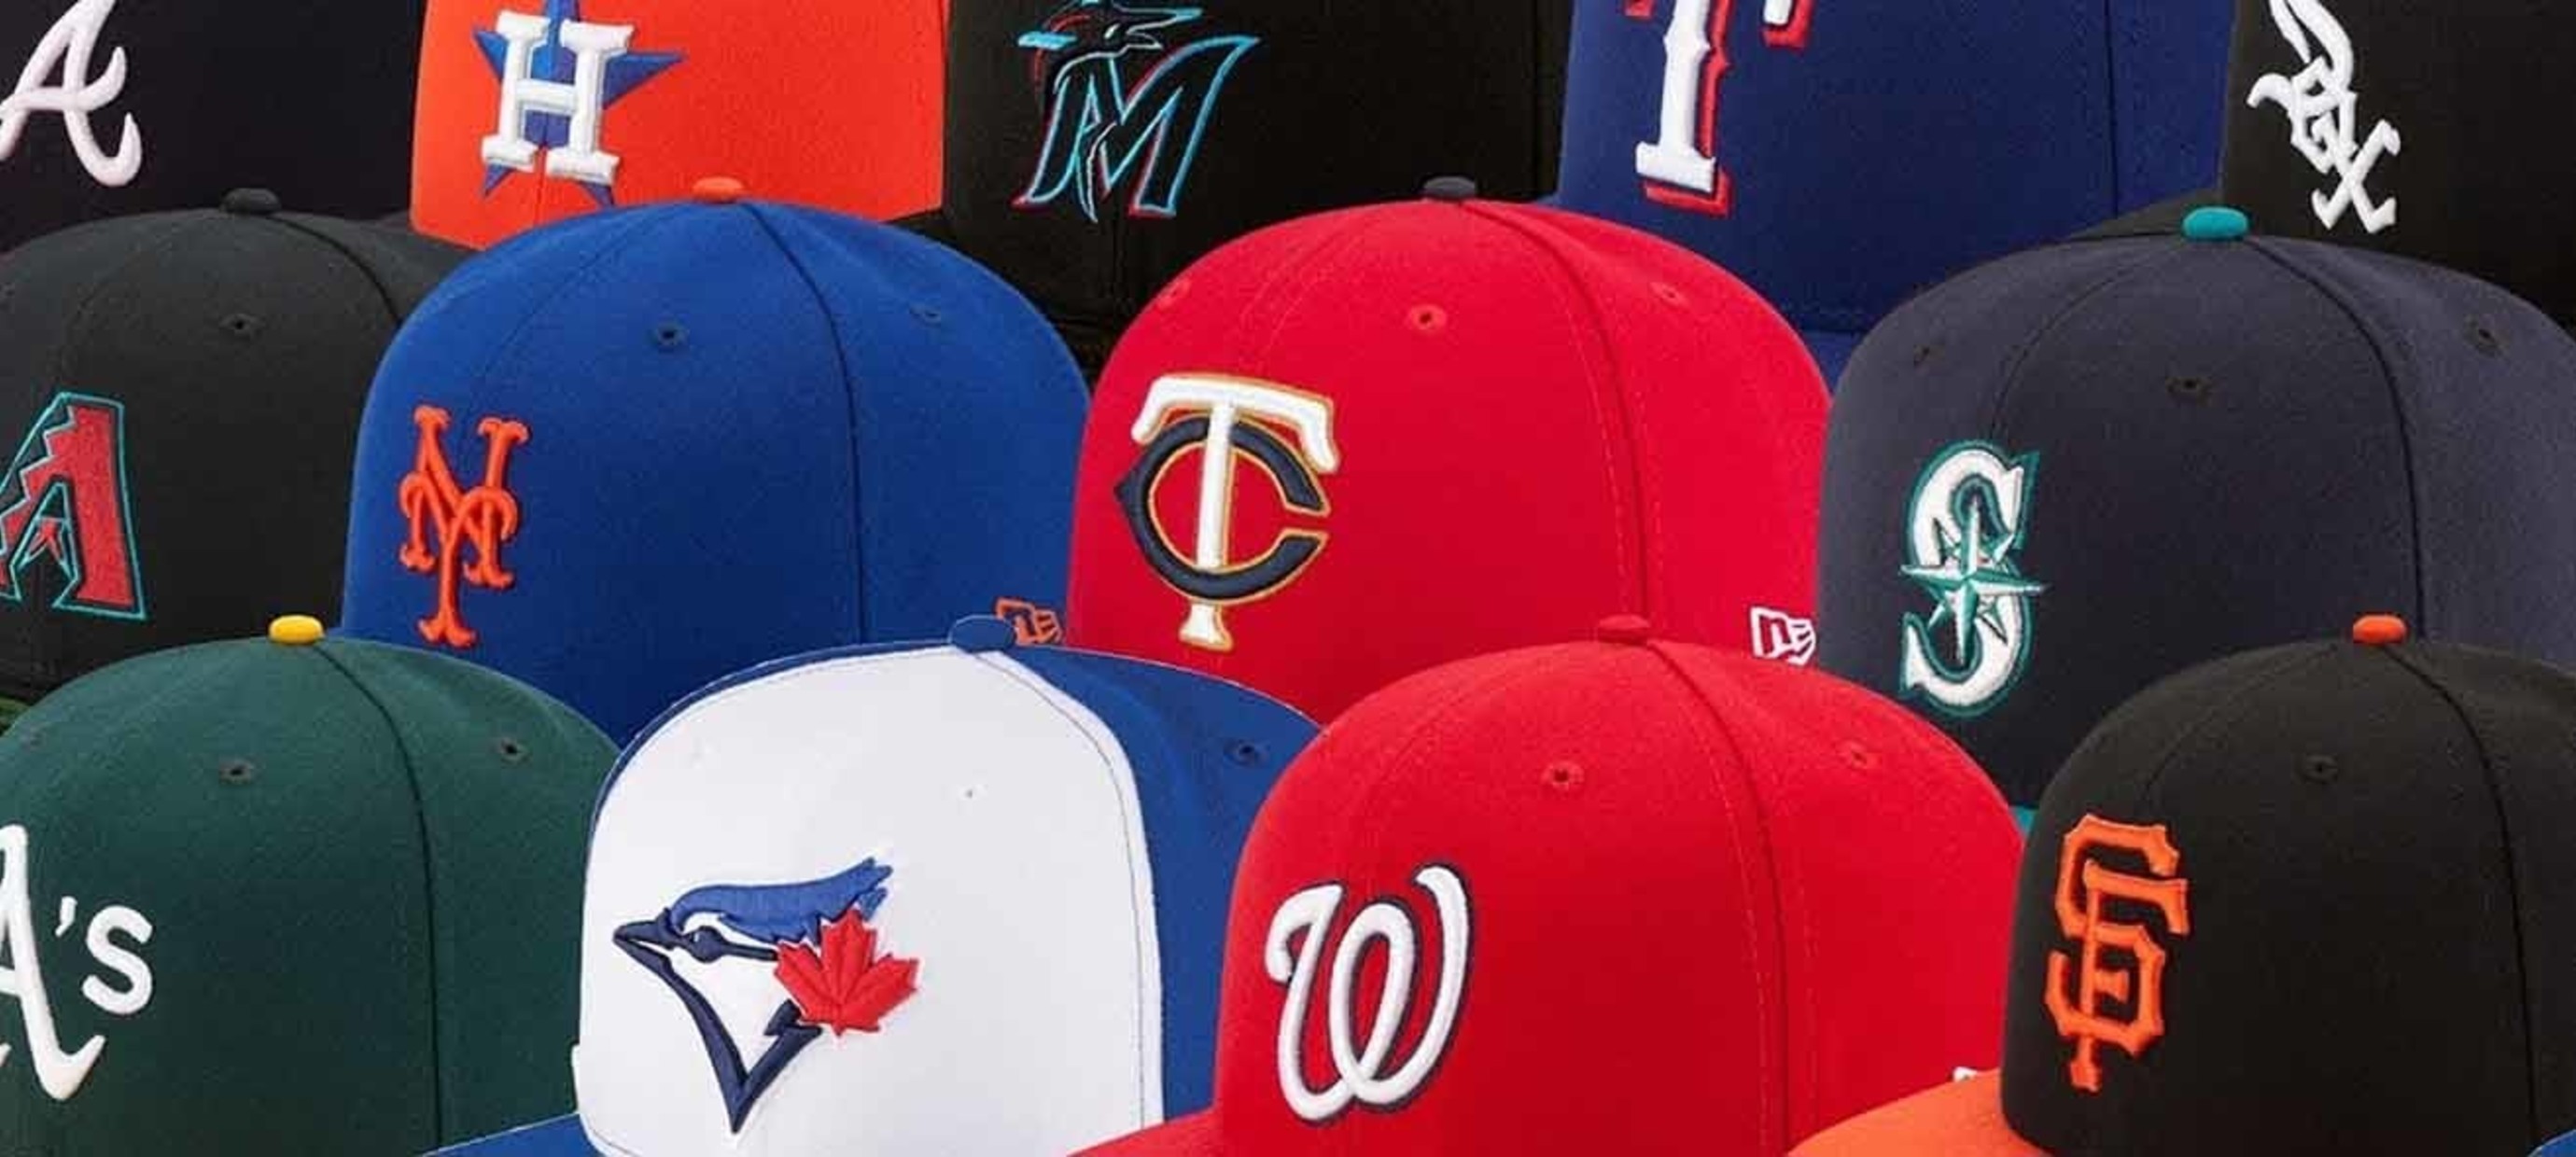 Baseball caps and team branding